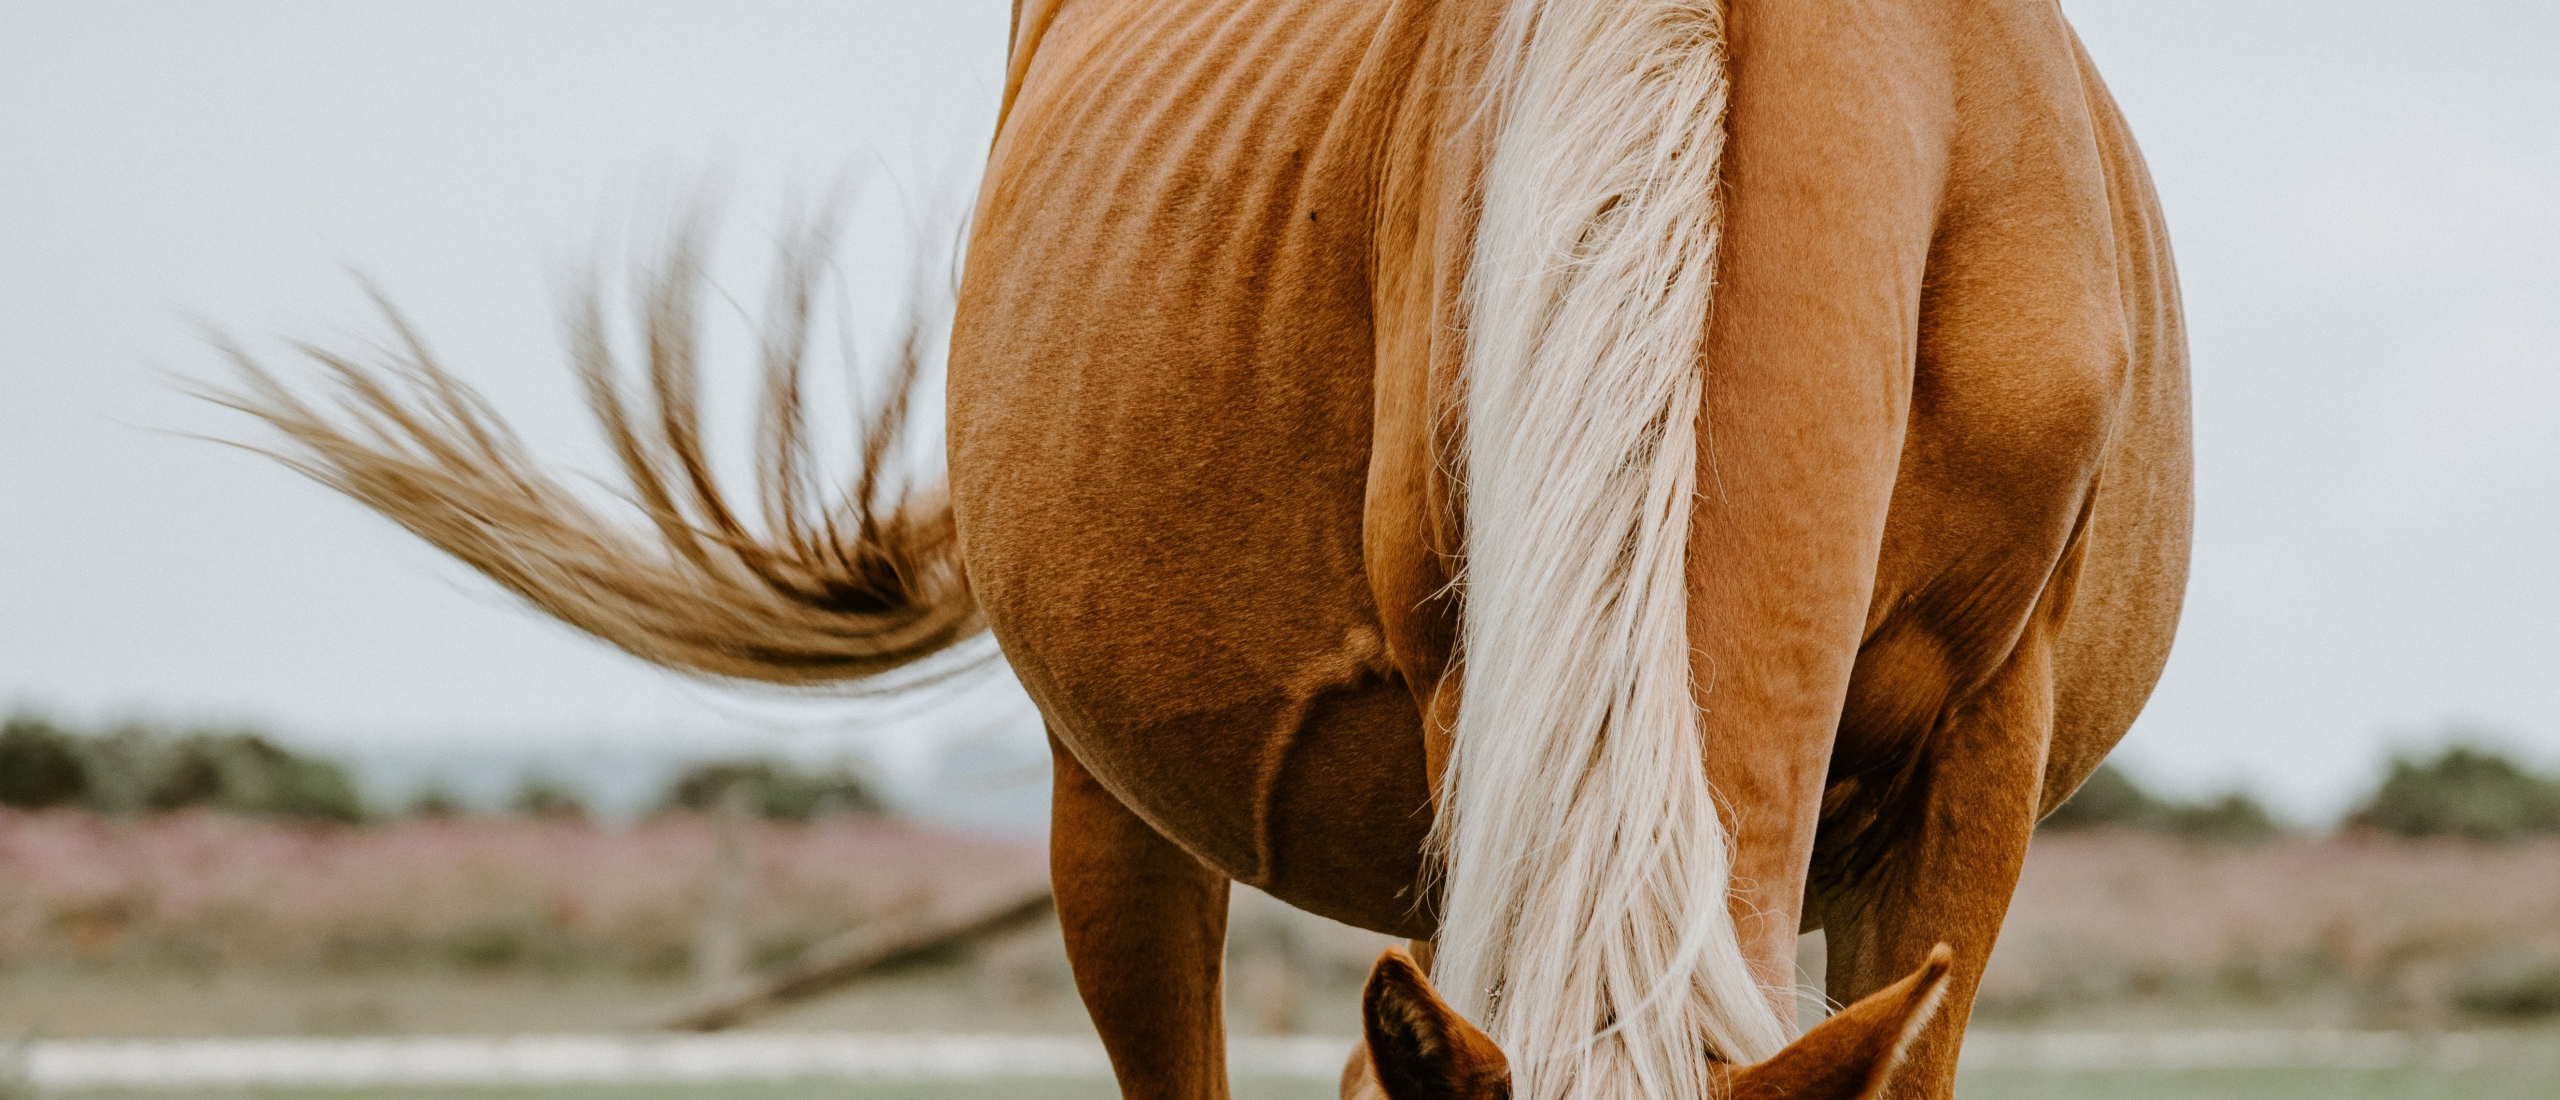 Mager paard: meer voeren of de darmen herstellen?